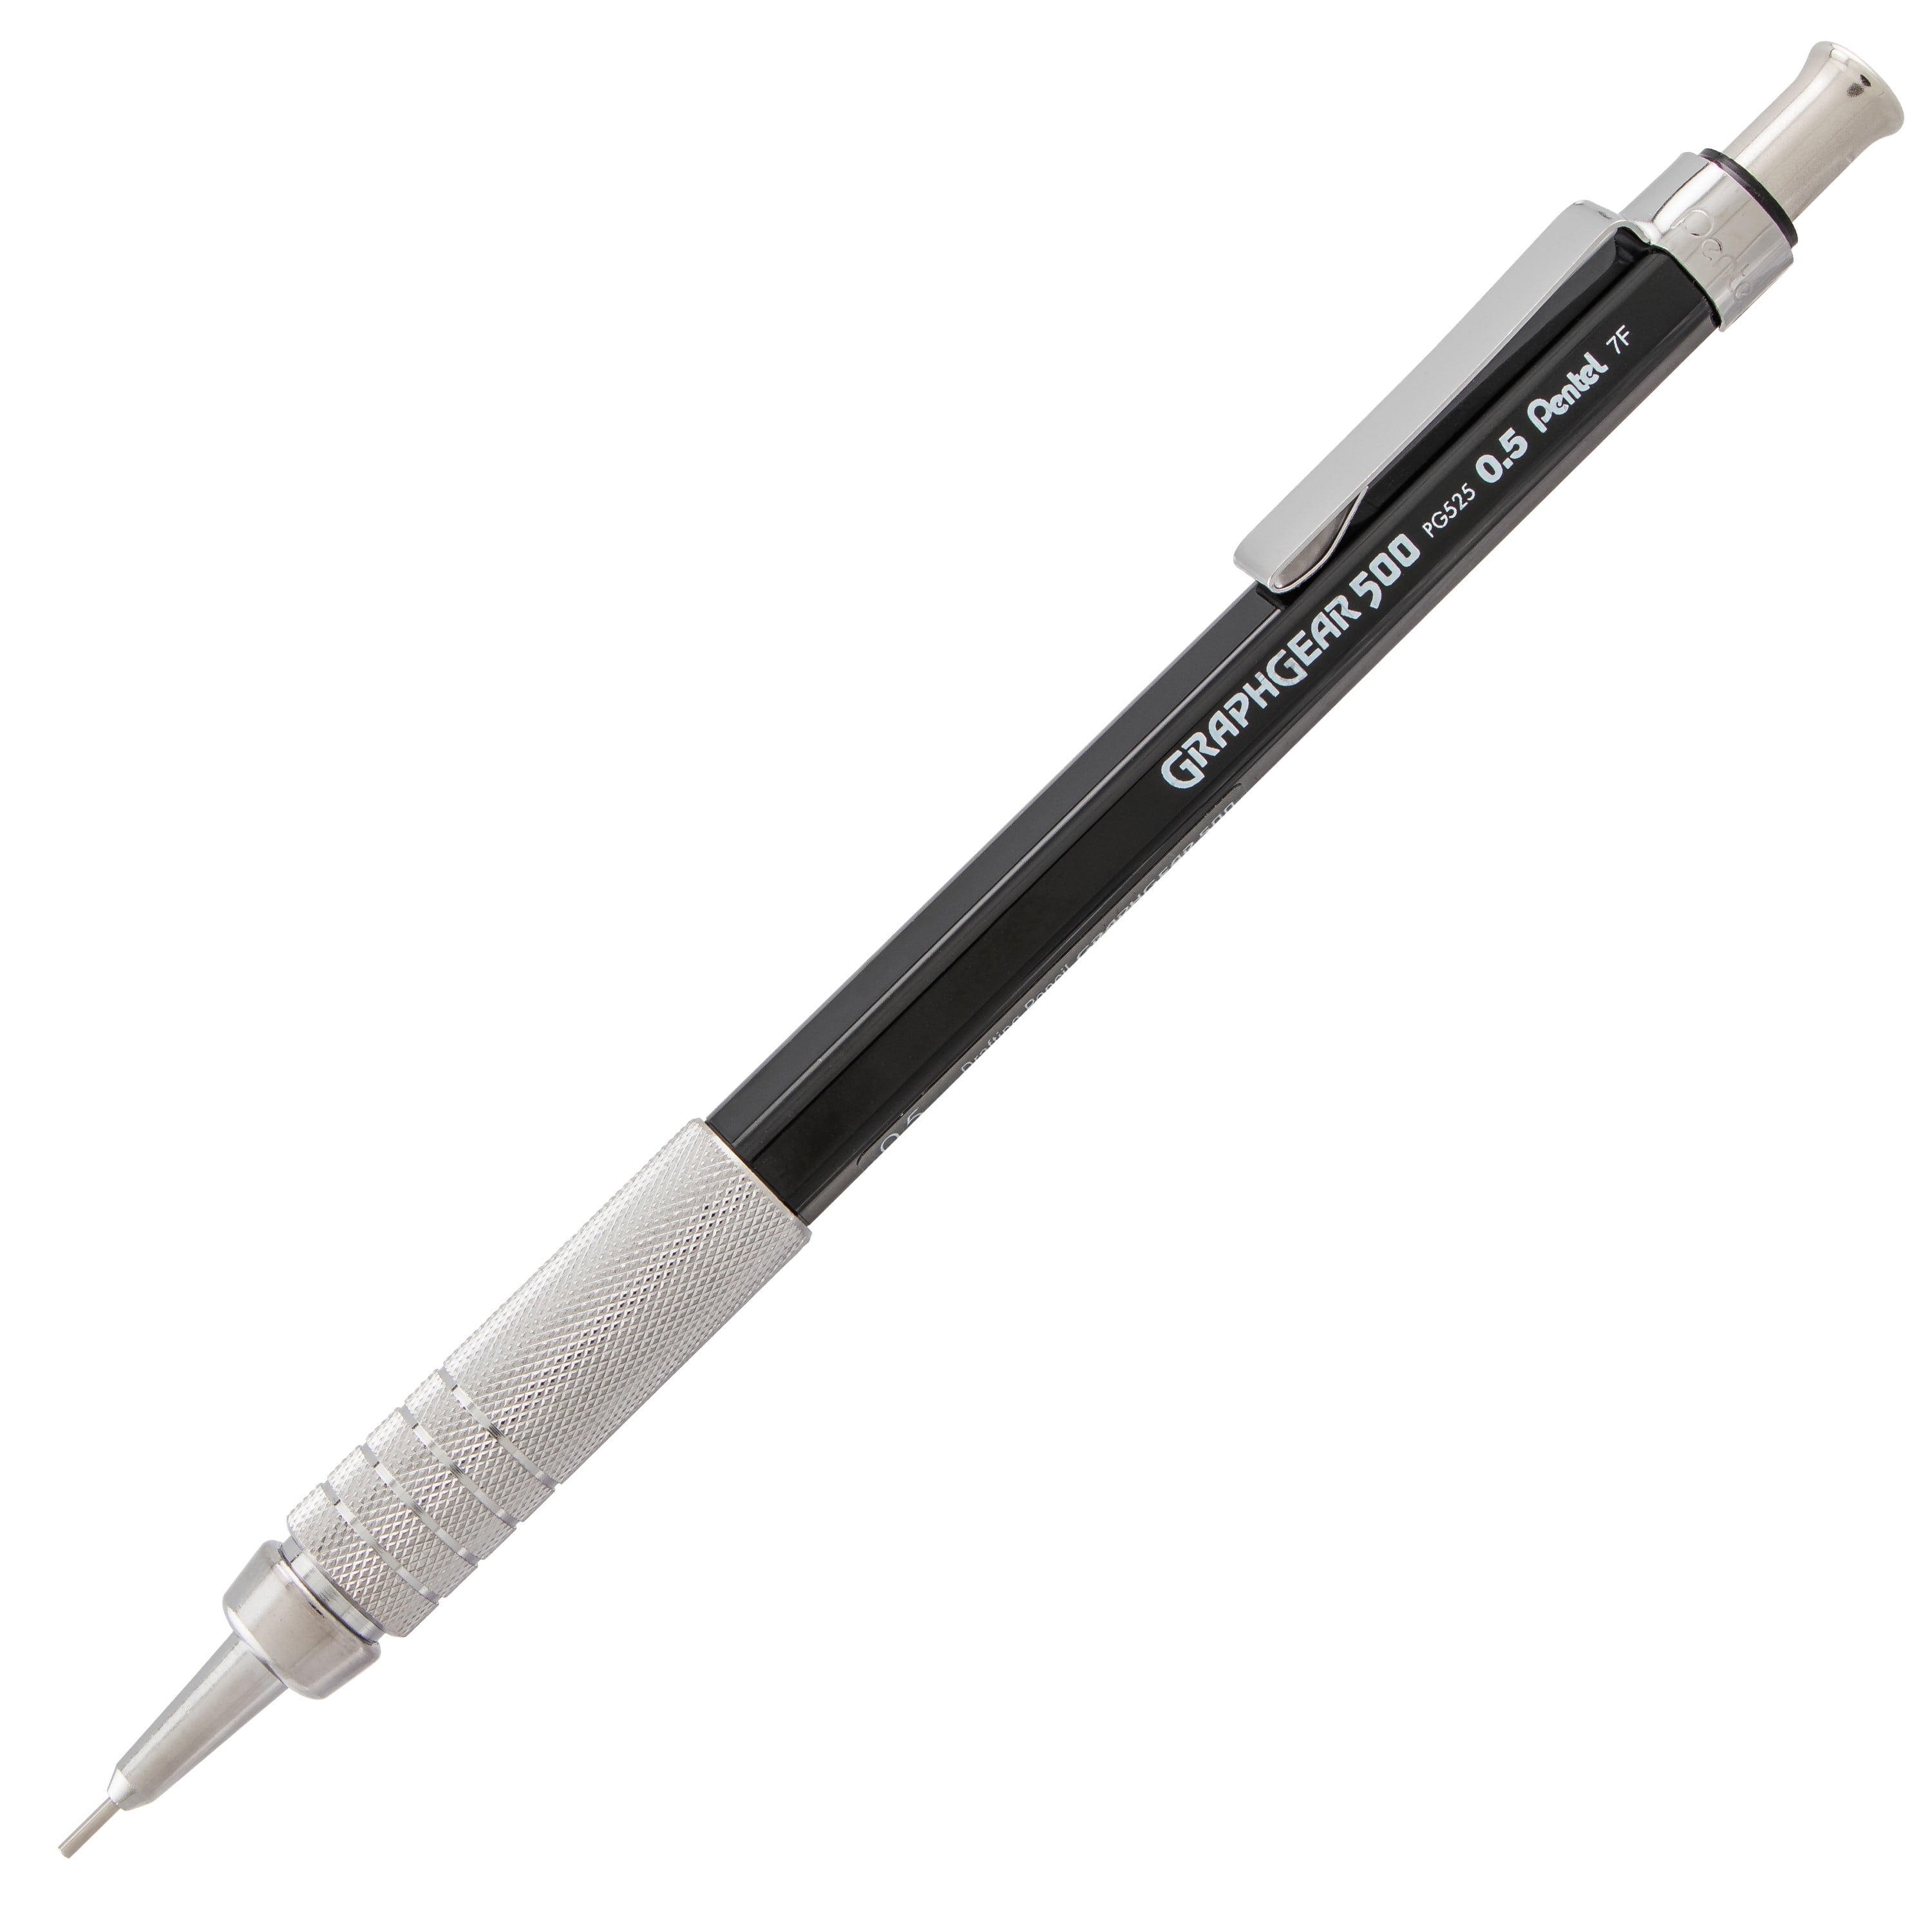 0.5mm HB Lead & Eraser Tip Animal Print Novelty Mechanical Pencil 3 Designs. 